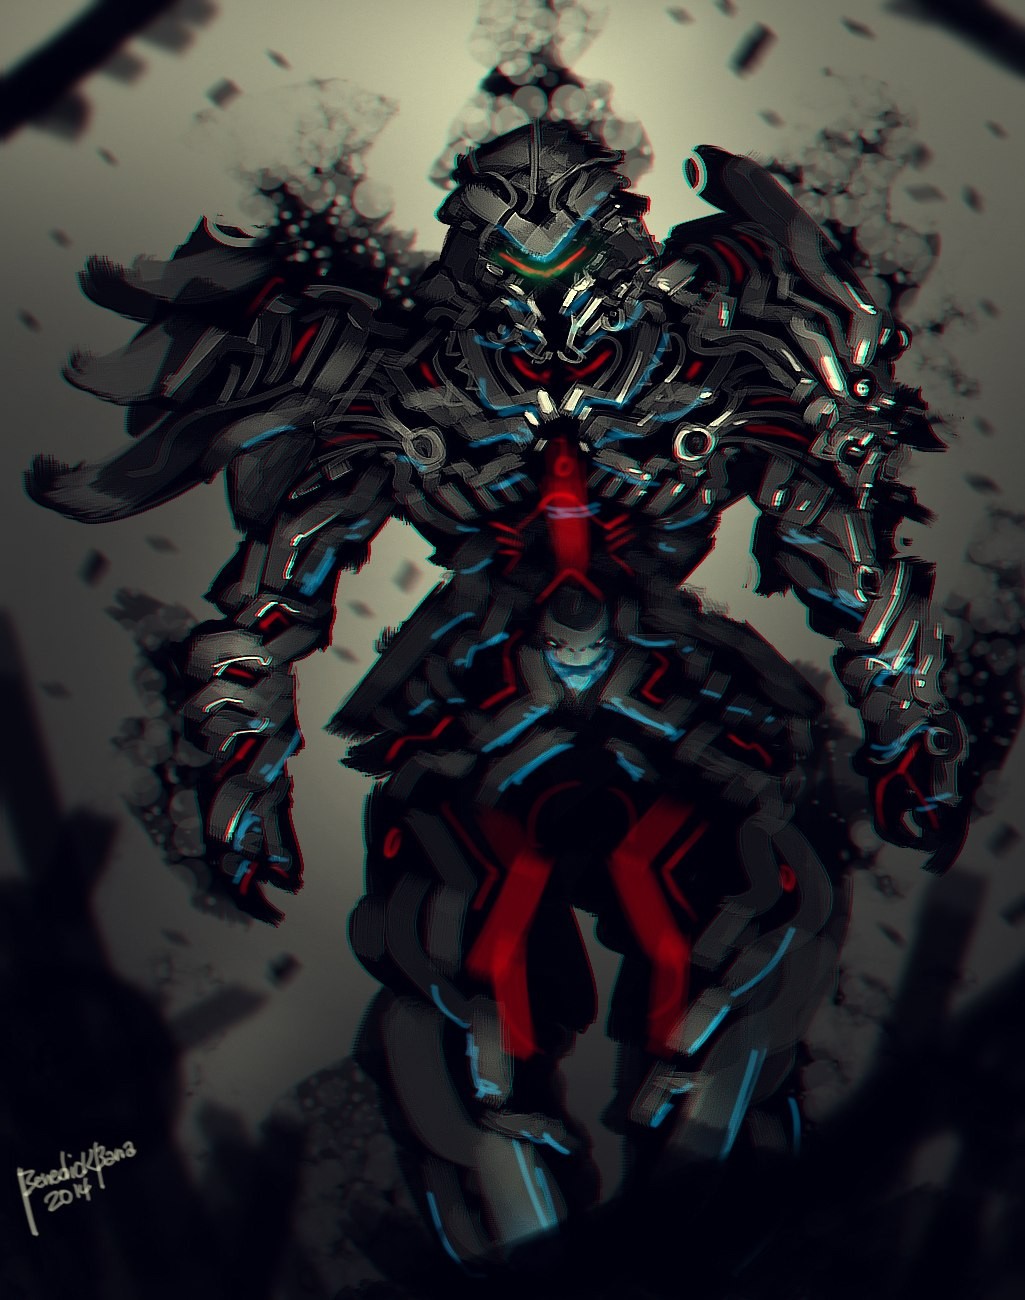 General 1025x1300 cyberpunk artwork samurai 2014 (Year) futuristic armor